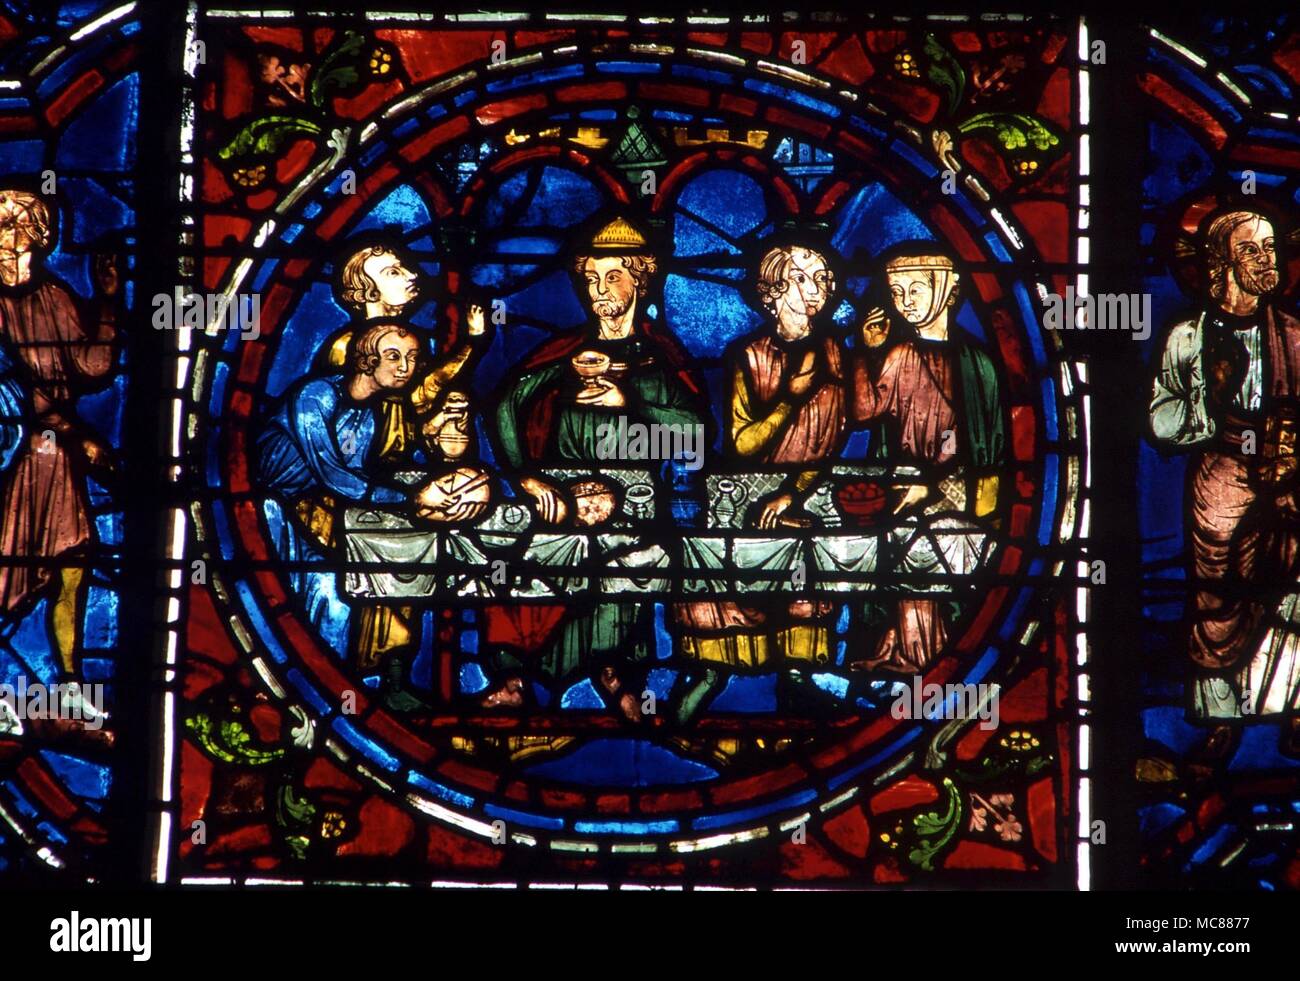 Última Cena cristiana - Detalle de vidriera de la catedral de Chartres Foto de stock